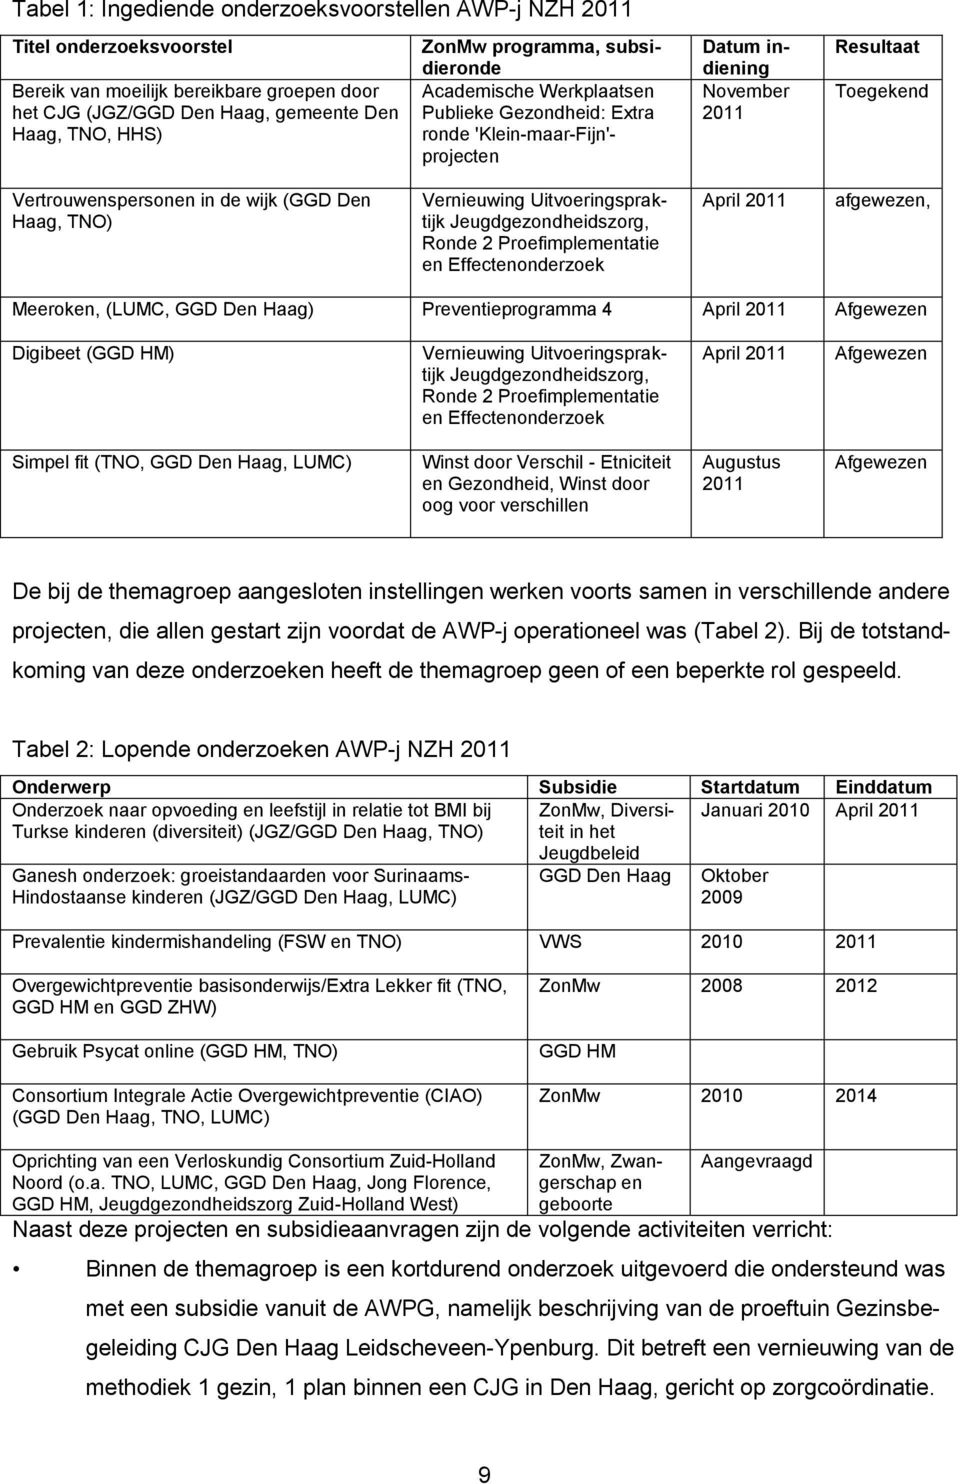 TNO) Vernieuwing Uitvoeringspraktijk Jeugdgezondheidszorg, Ronde 2 Proefimplementatie en Effectenonderzoek April 2011 afgewezen, Meeroken, (LUMC, GGD Den Haag) Preventieprogramma 4 April 2011